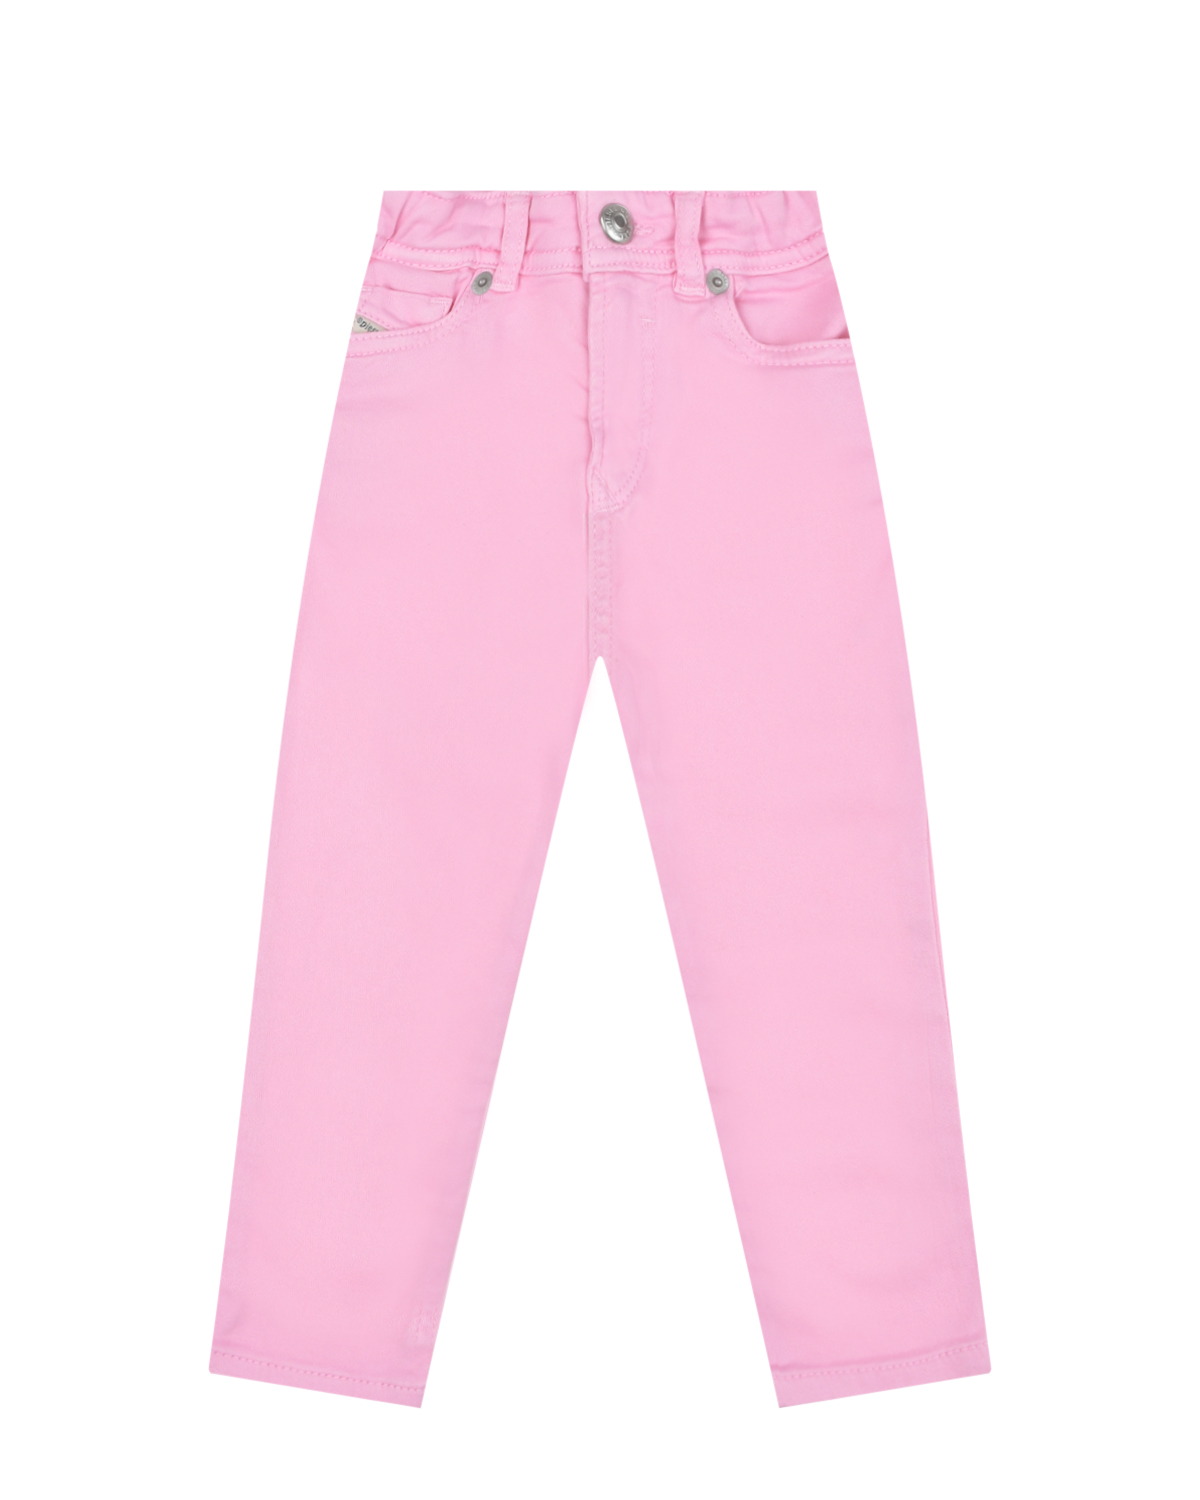 Розовые джинсы с поясом на резинке Diesel